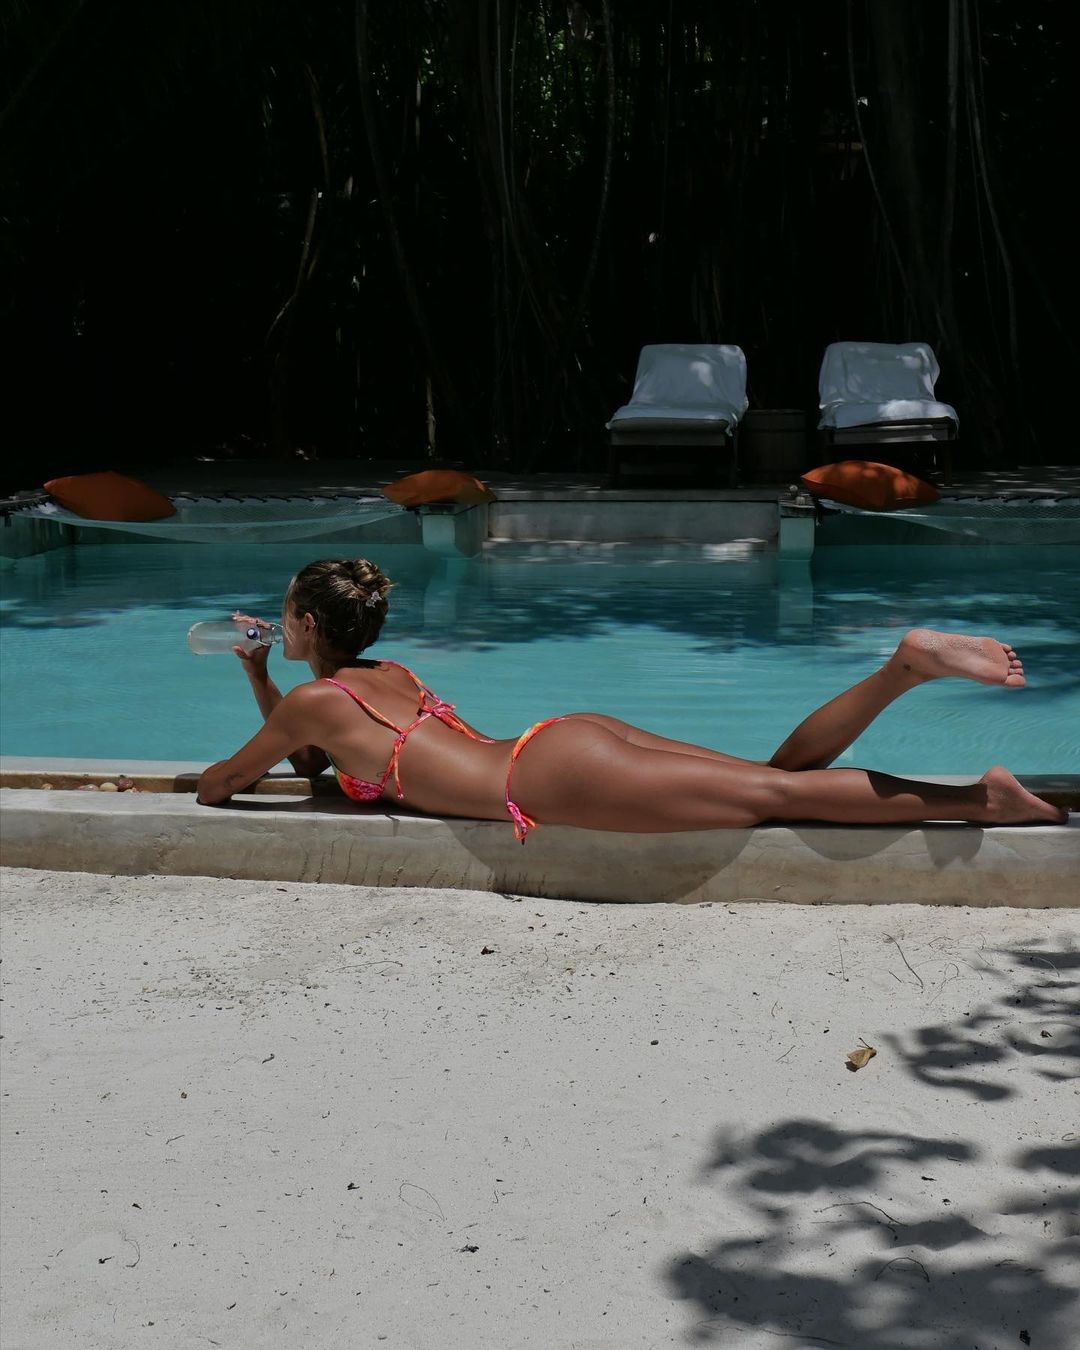 Sasha posta de bíquini à beira da piscina  — Foto: Divulgação Instagram